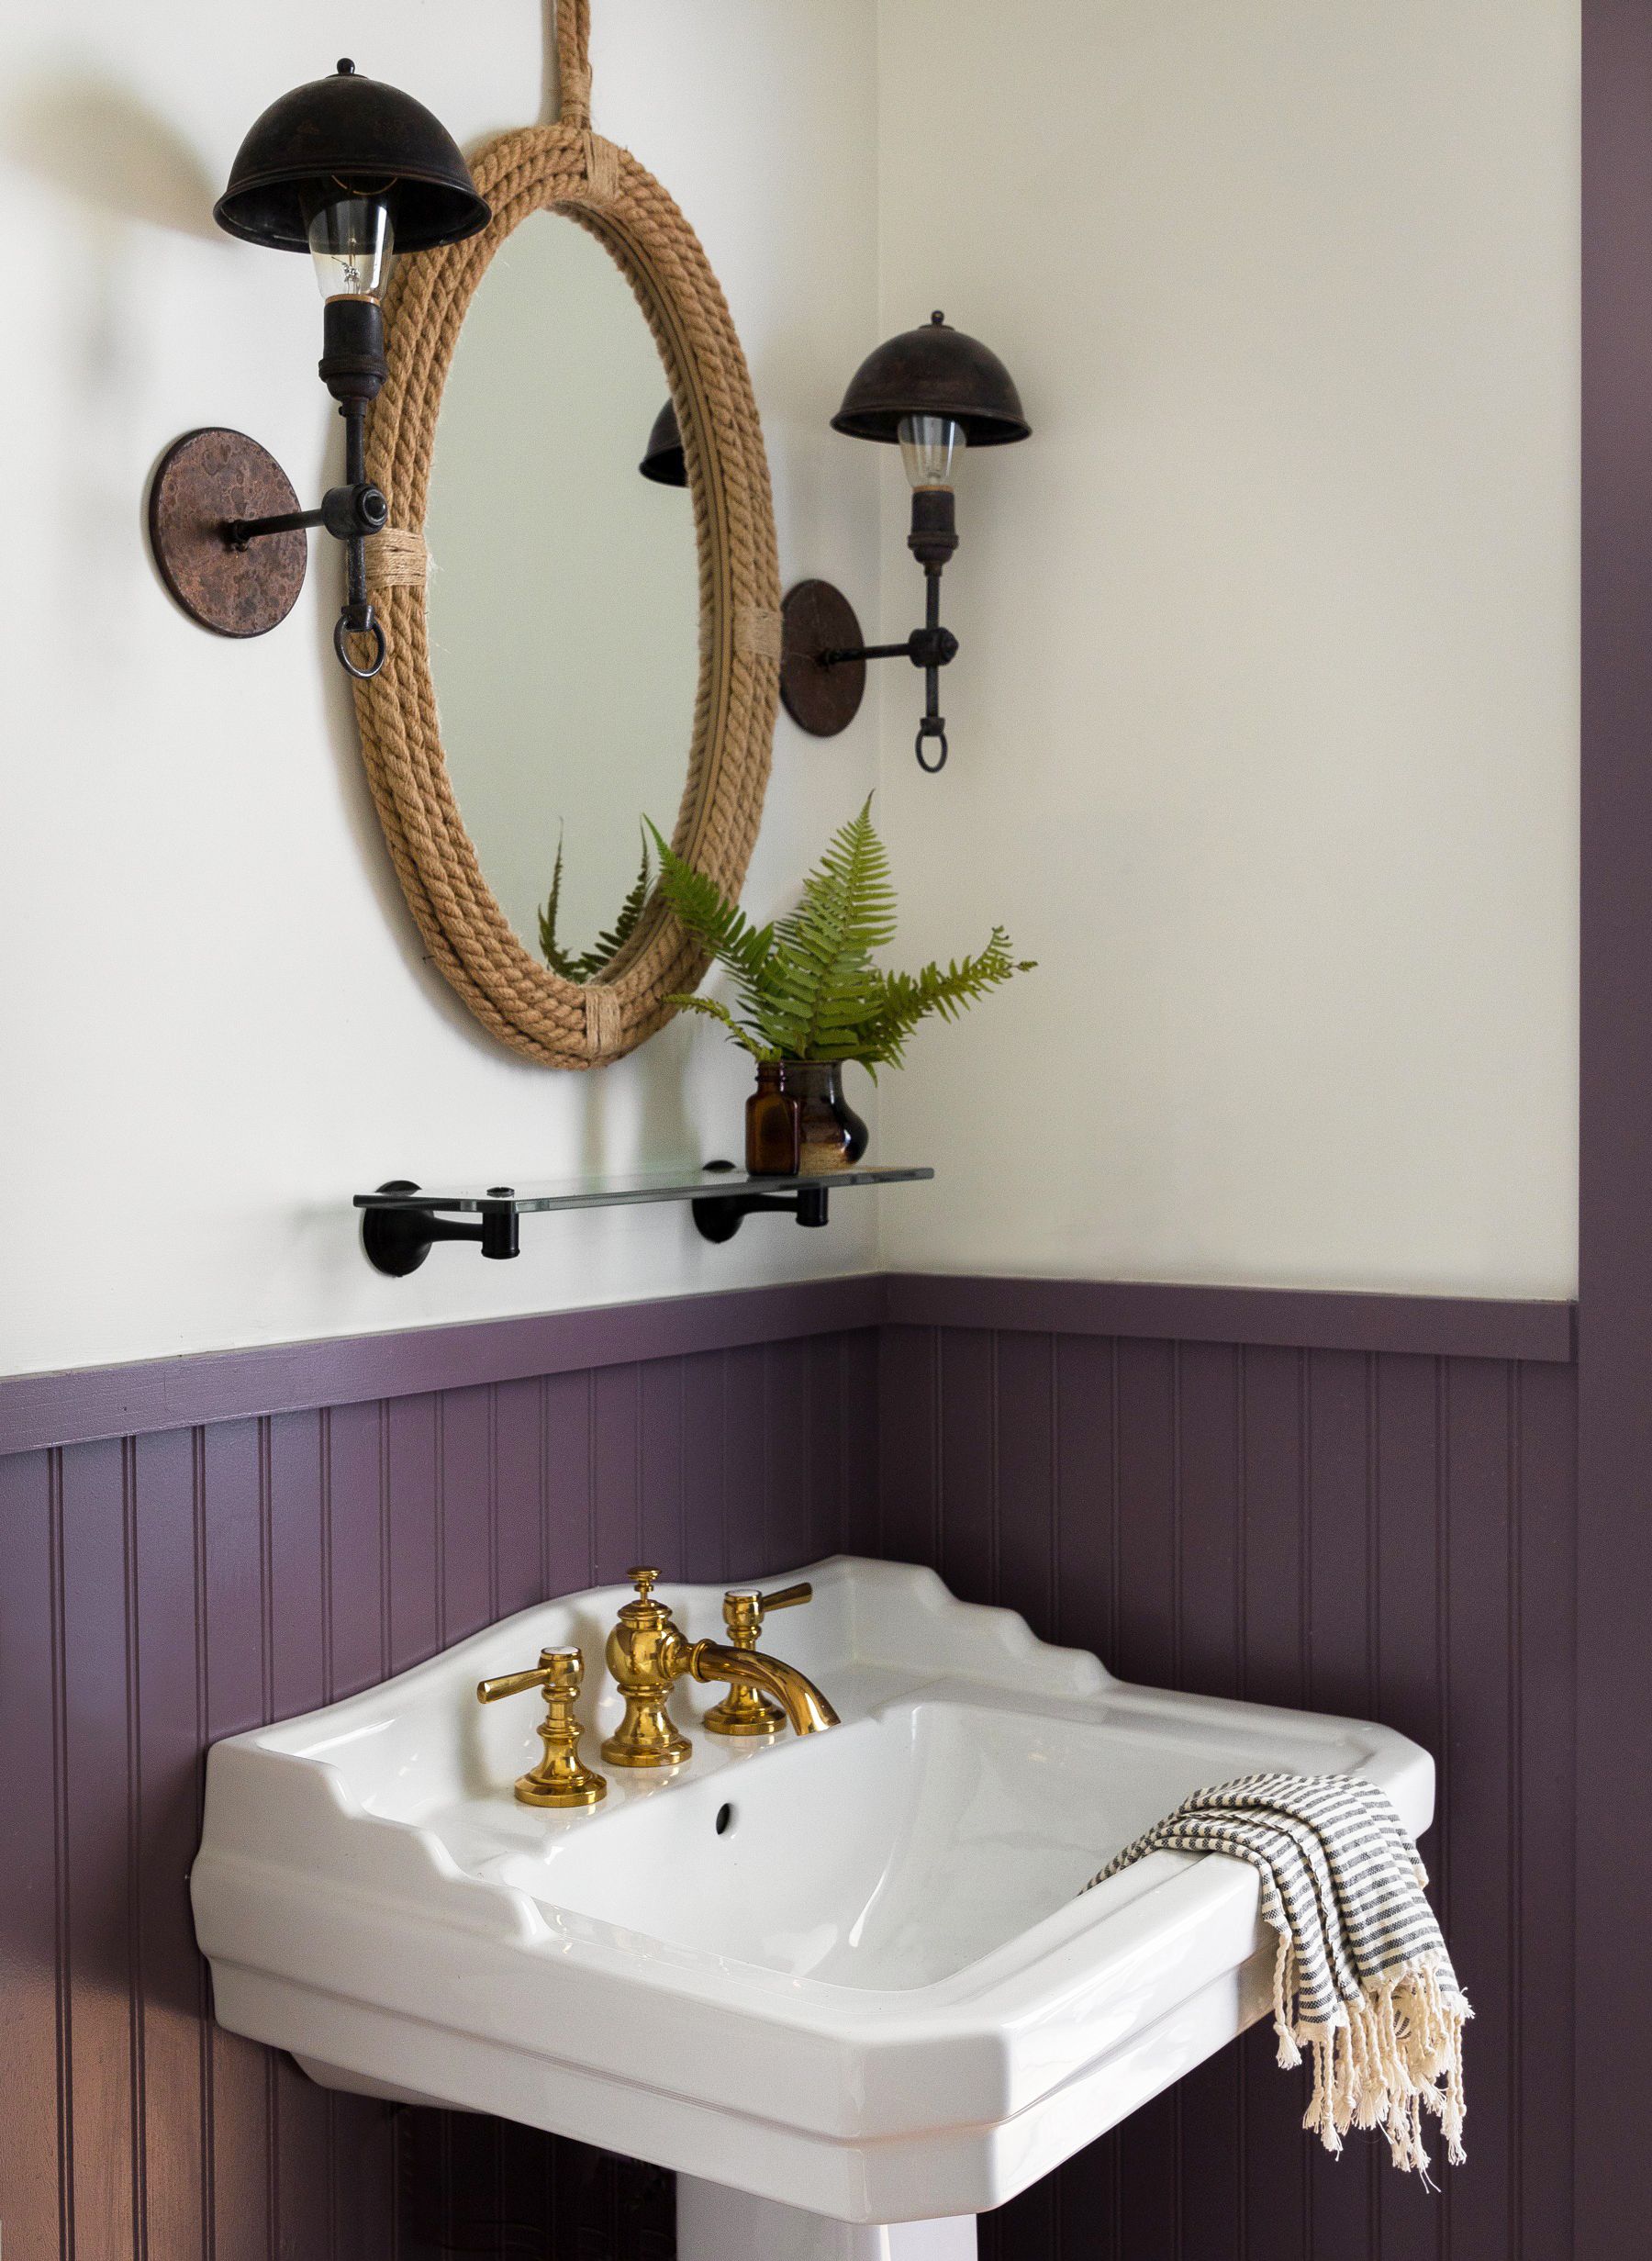 28 Stylish Bathroom Shelf Ideas The, Bathroom Mirror And Shelves Ideas